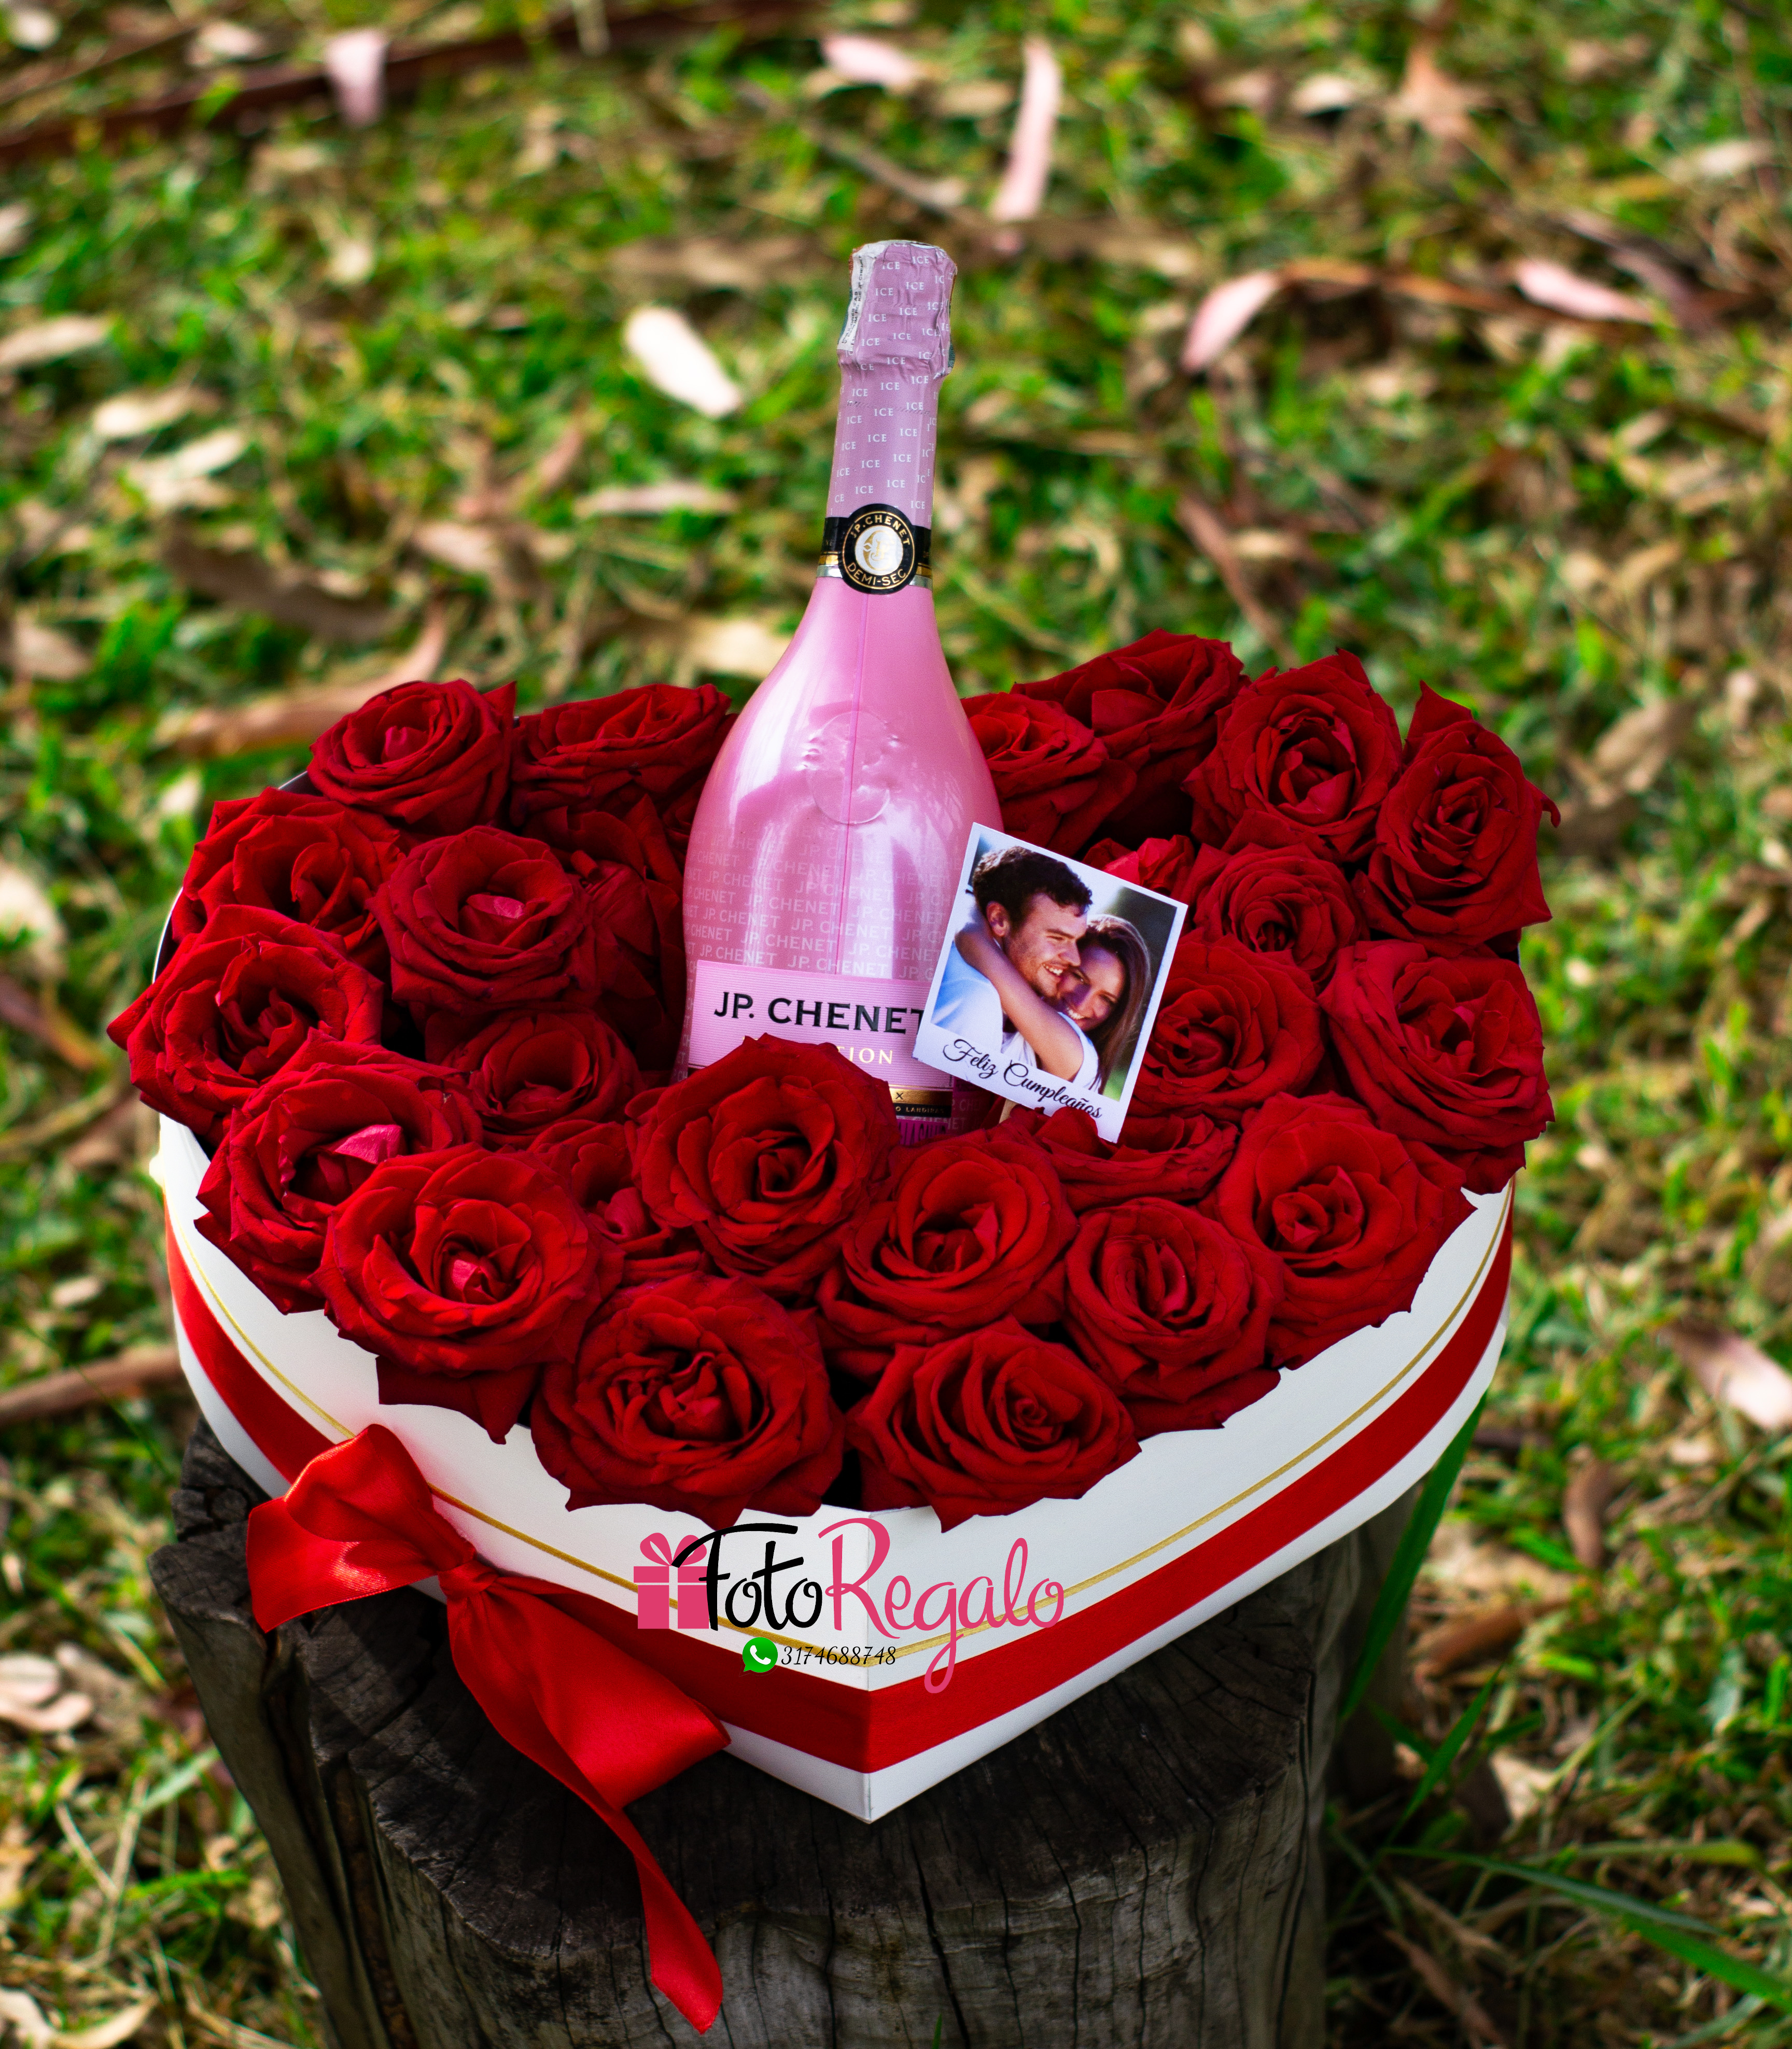 Floristería Popayán. Flores a domicilio. Caja de rosas corazón grande con vino rosado JP: Chenet y foto